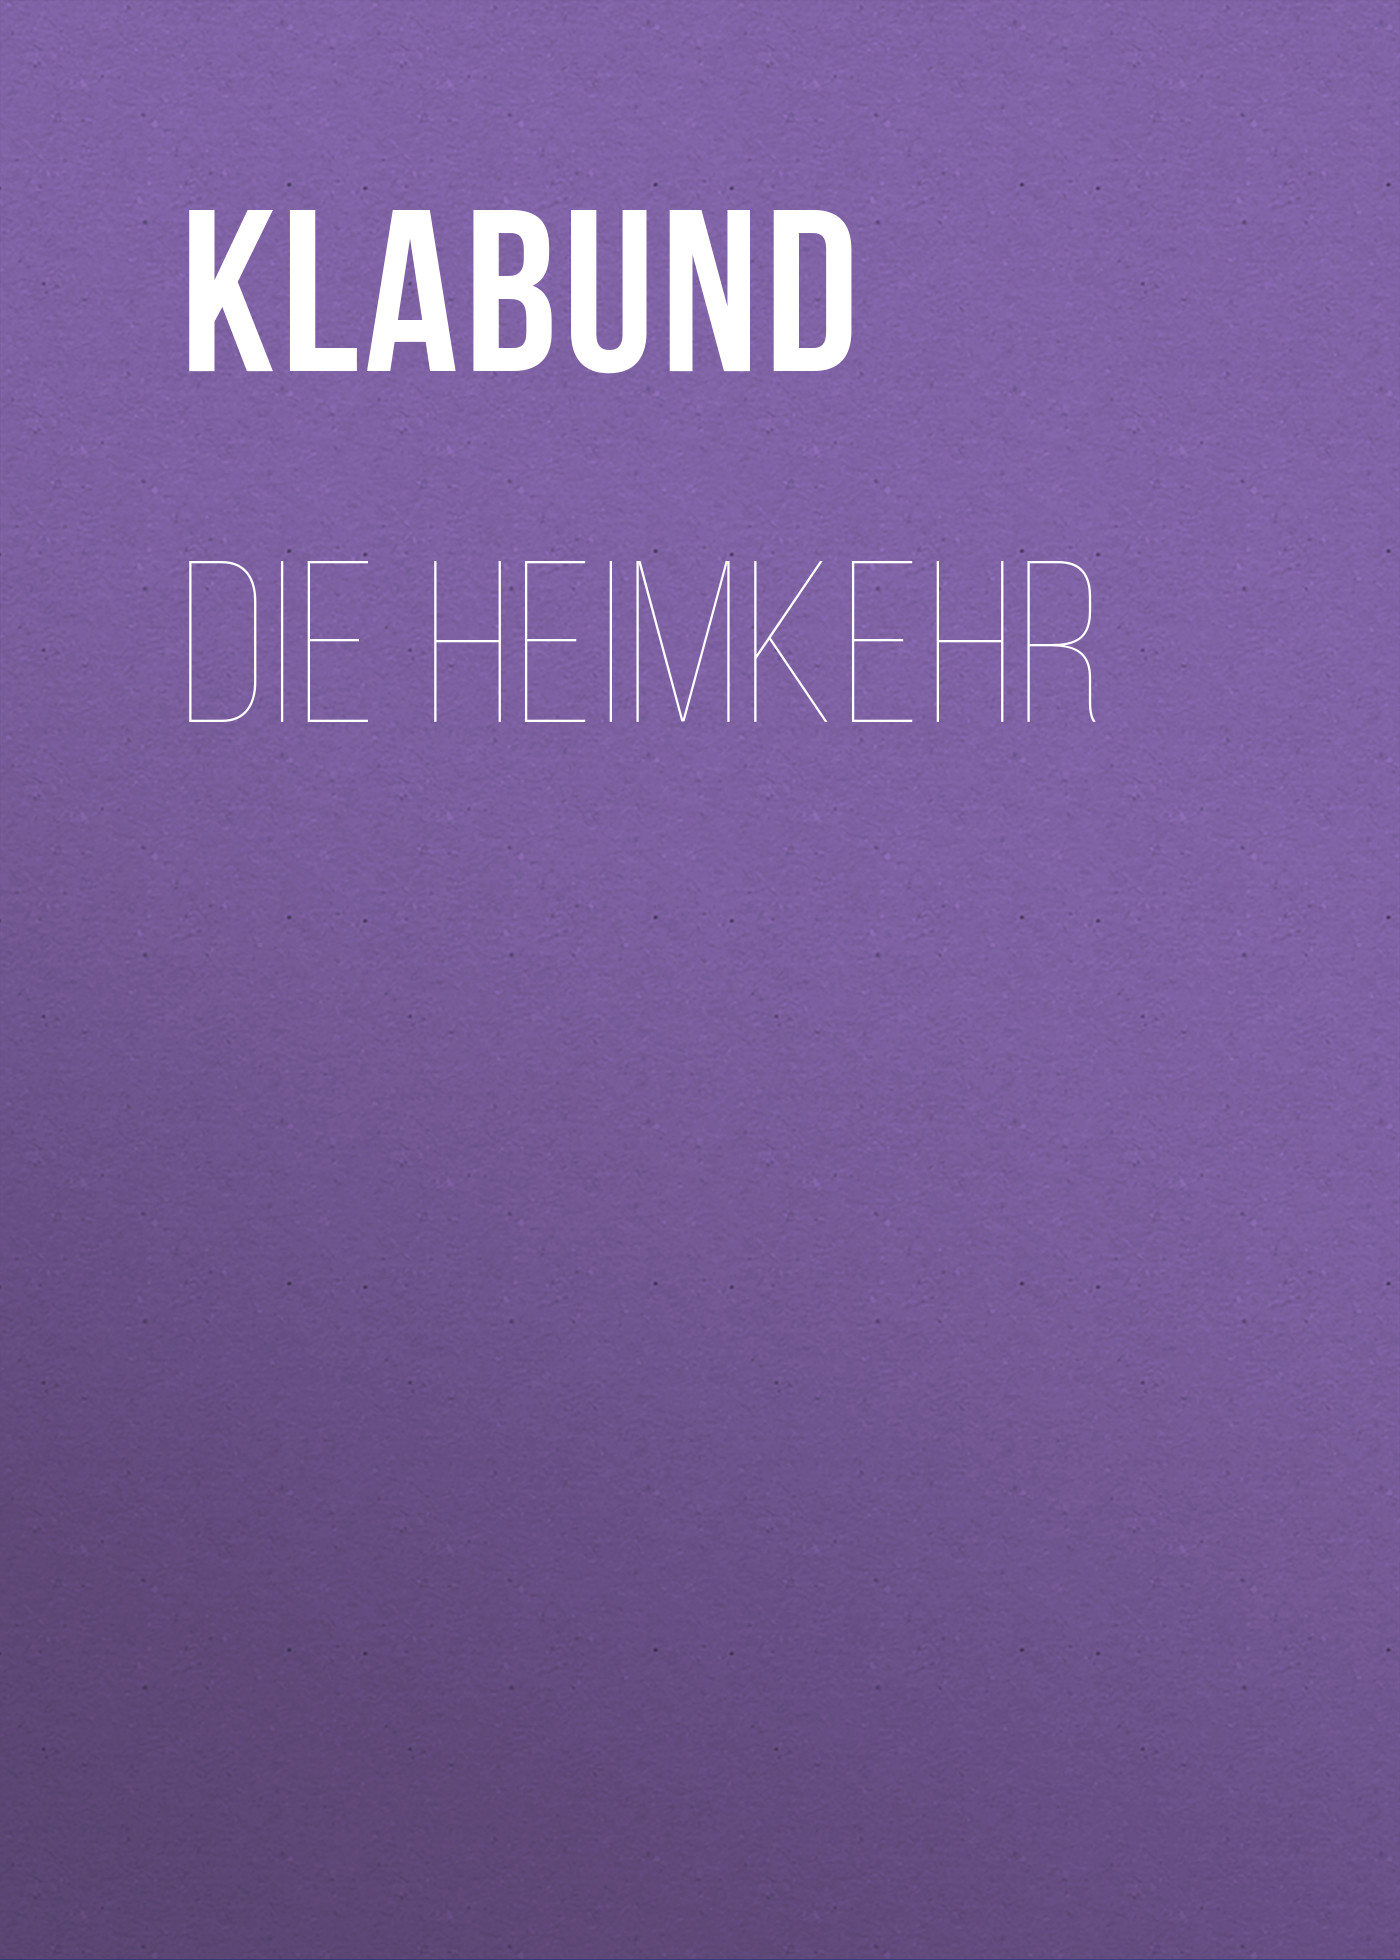 Книга Die Heimkehr из серии , созданная Klabund , может относится к жанру Зарубежная классика. Стоимость электронной книги Die Heimkehr с идентификатором 48631828 составляет 0 руб.